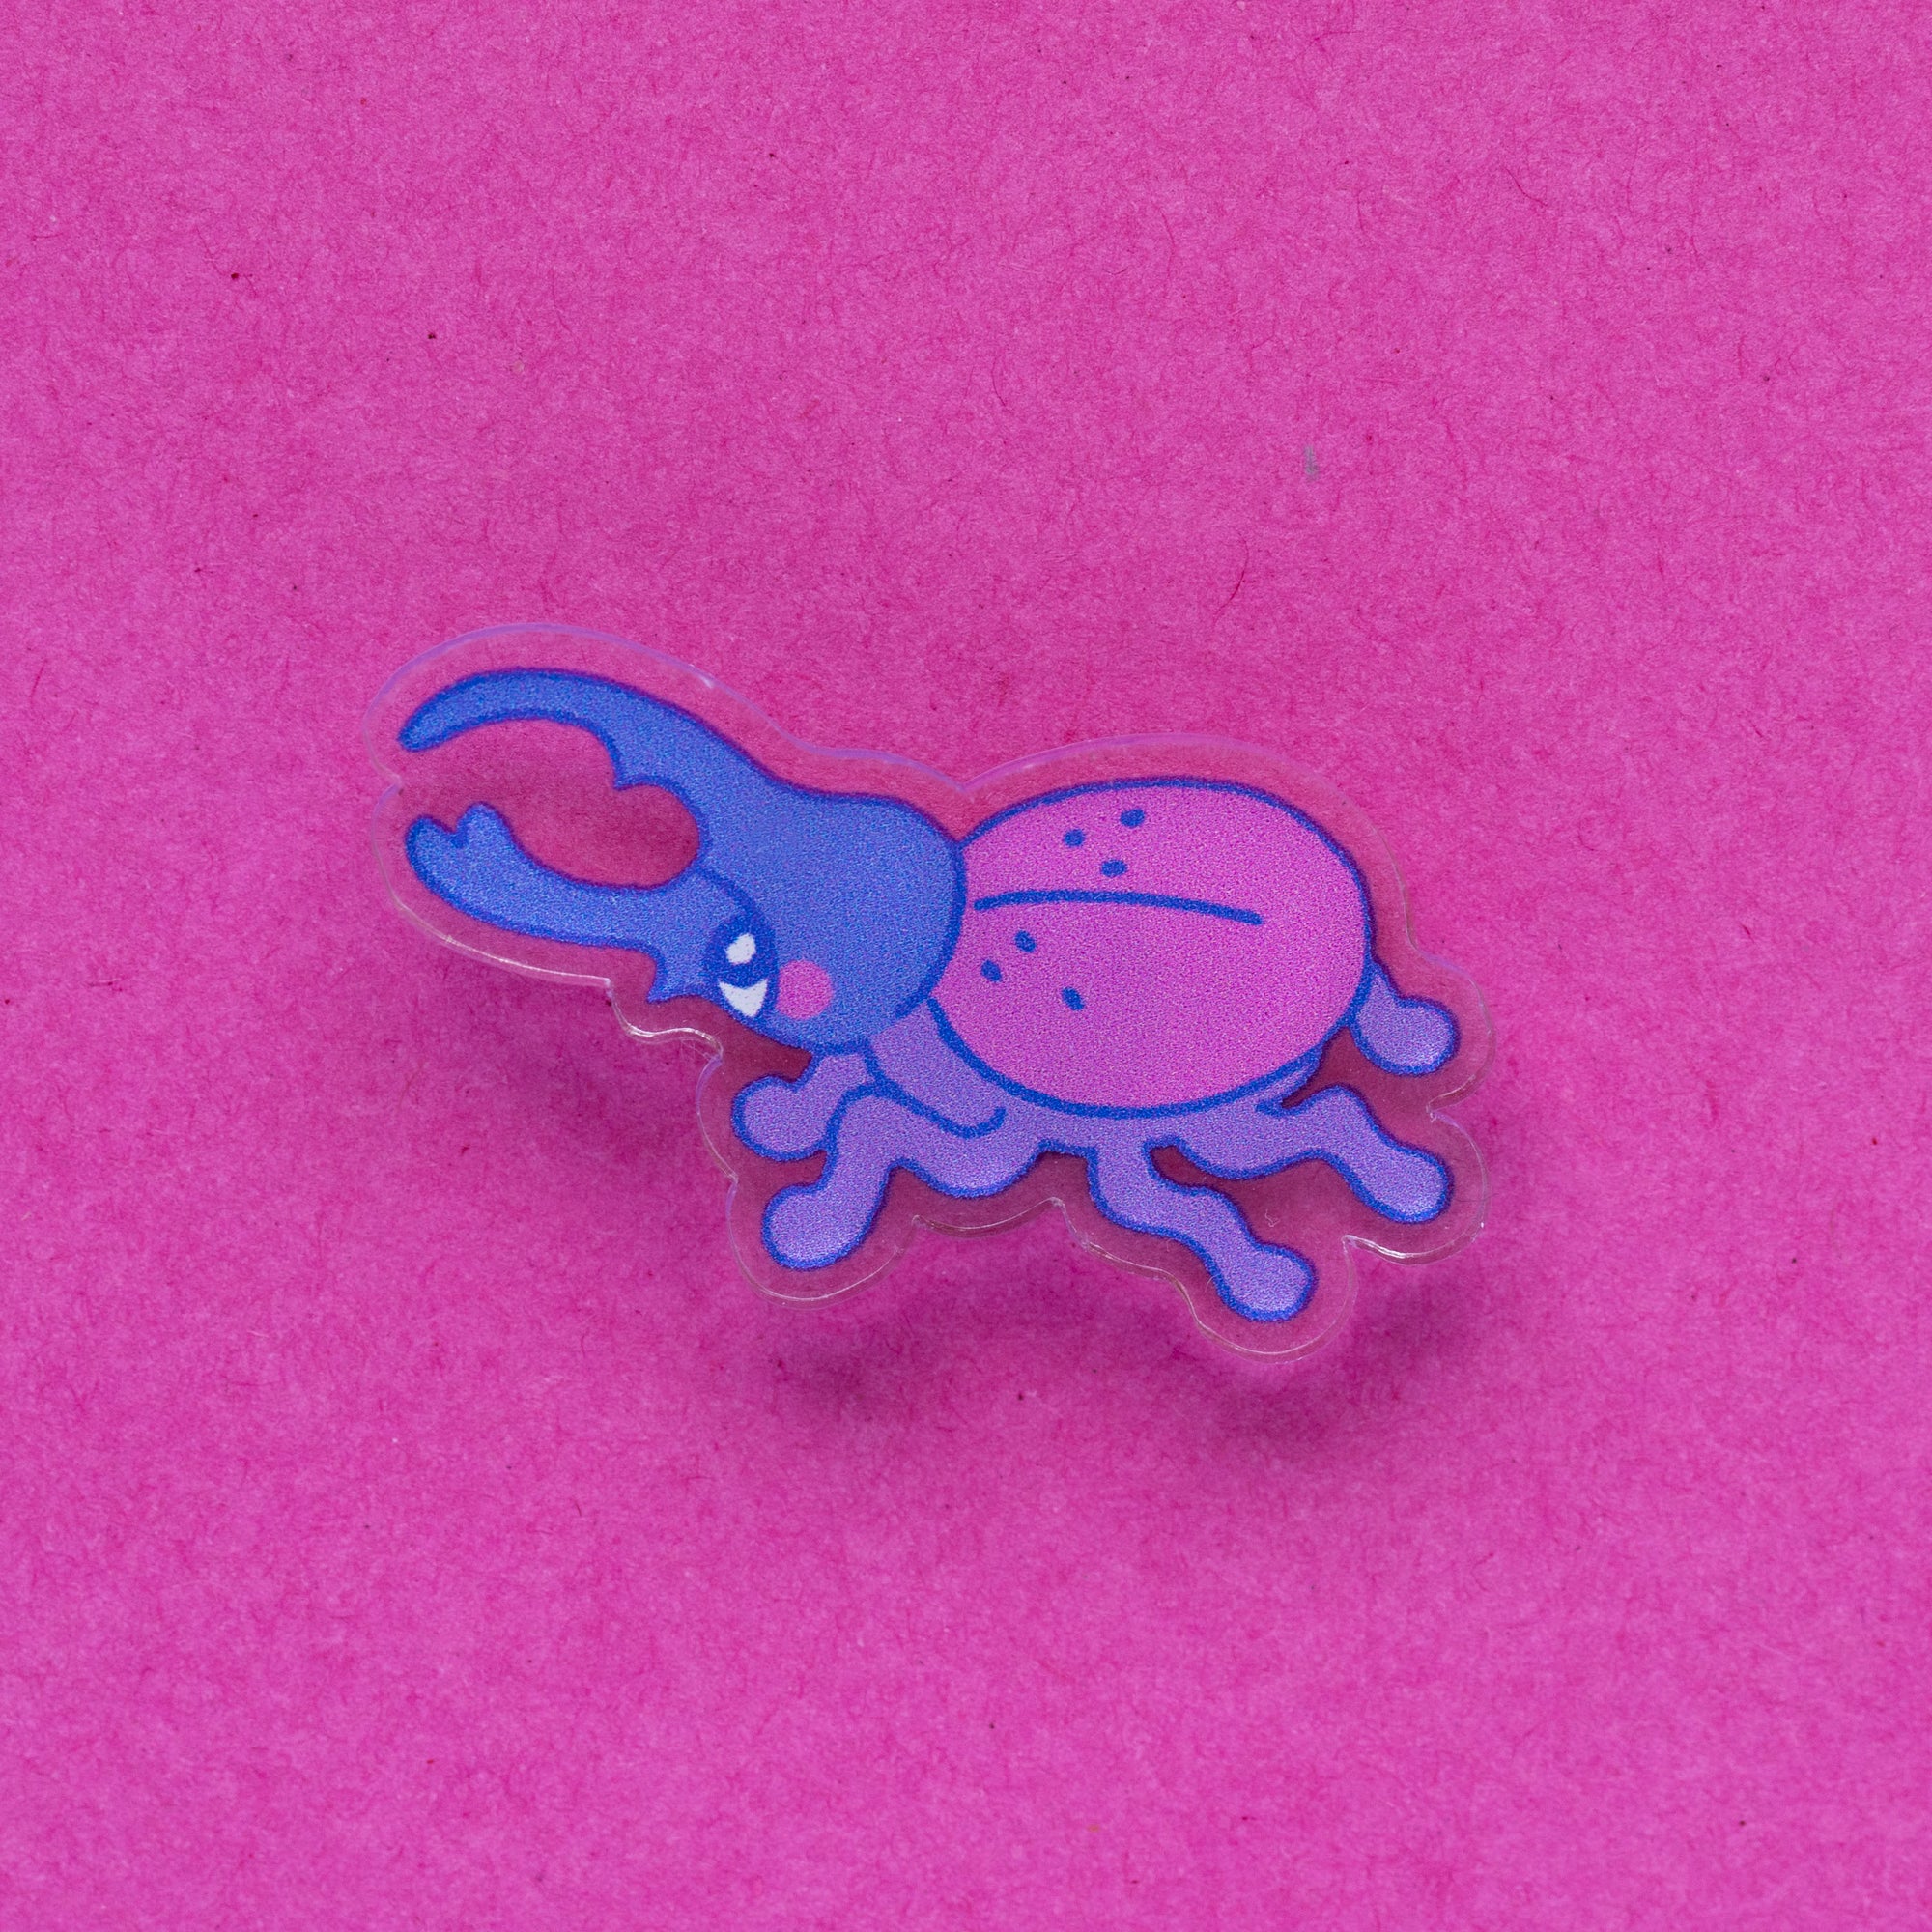 bi beetle mini acrylic pin